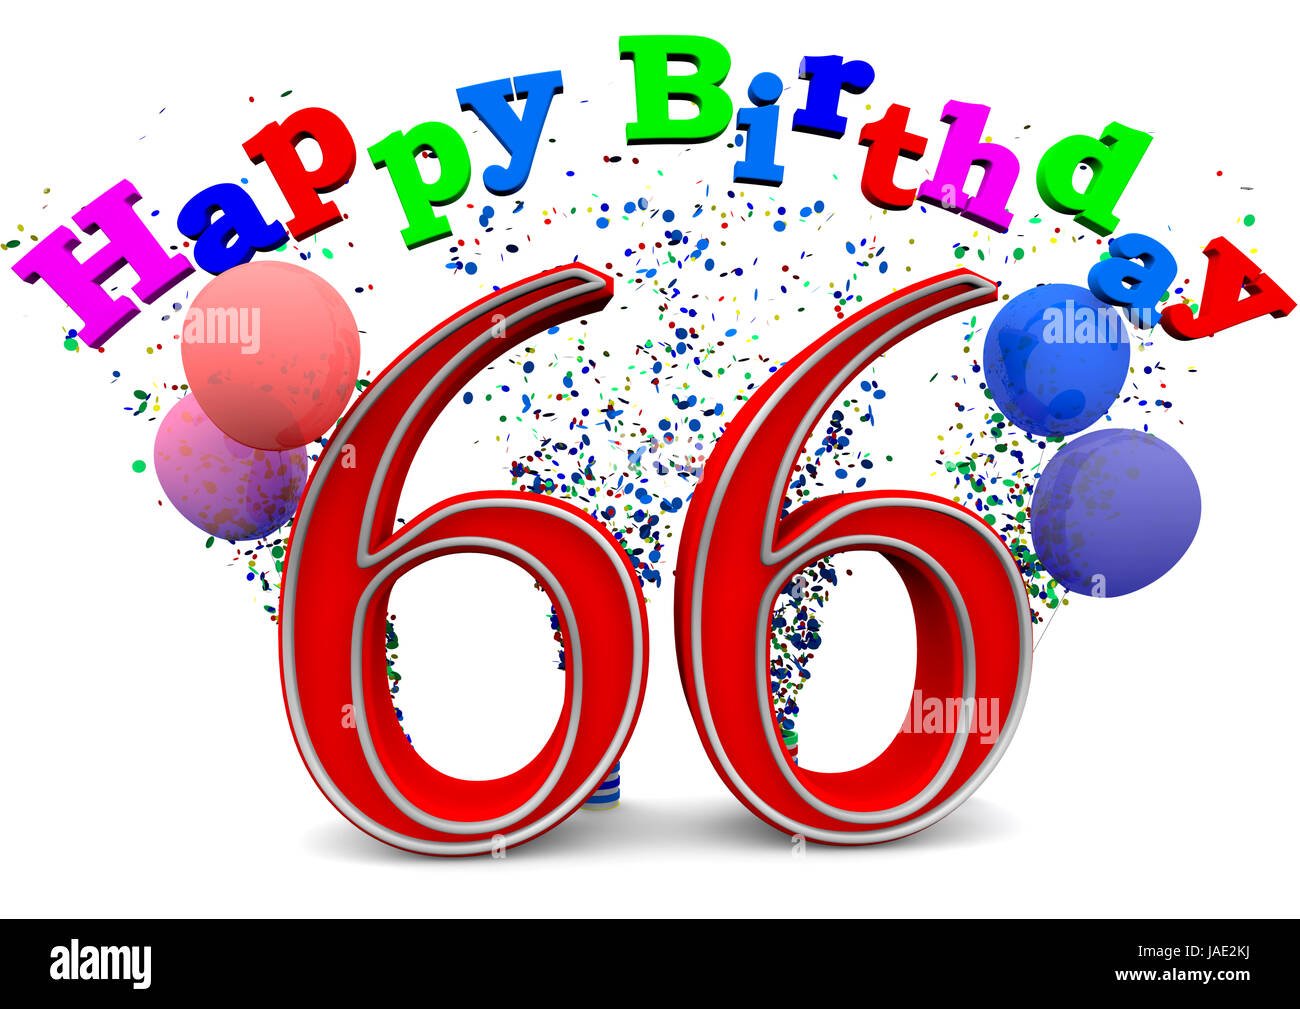 Поздравление с днем рождения мужчине 66 лет. Открытки с днем рождения 66 лет. С днём рождения мужчине 66 летием. Поздравление с днем рождения 66 лет. Открытка с 66 летием мужчине.